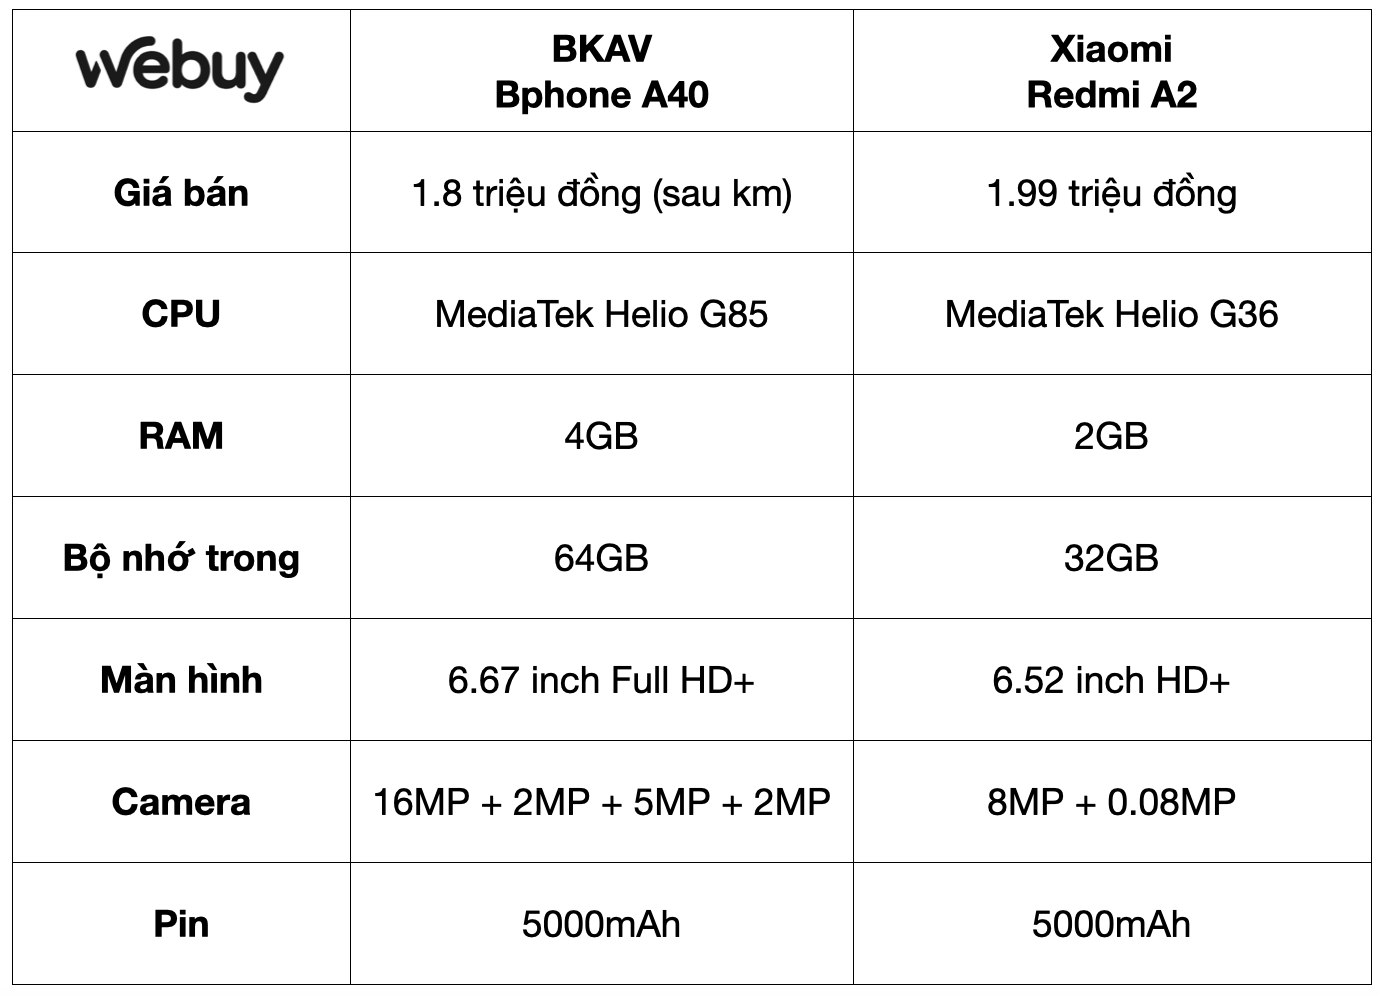 Bán Bphone giá chỉ hơn 1 triệu, BKAV khiến “vua giá rẻ” Xiaomi cũng phải run sợ - Ảnh 3.